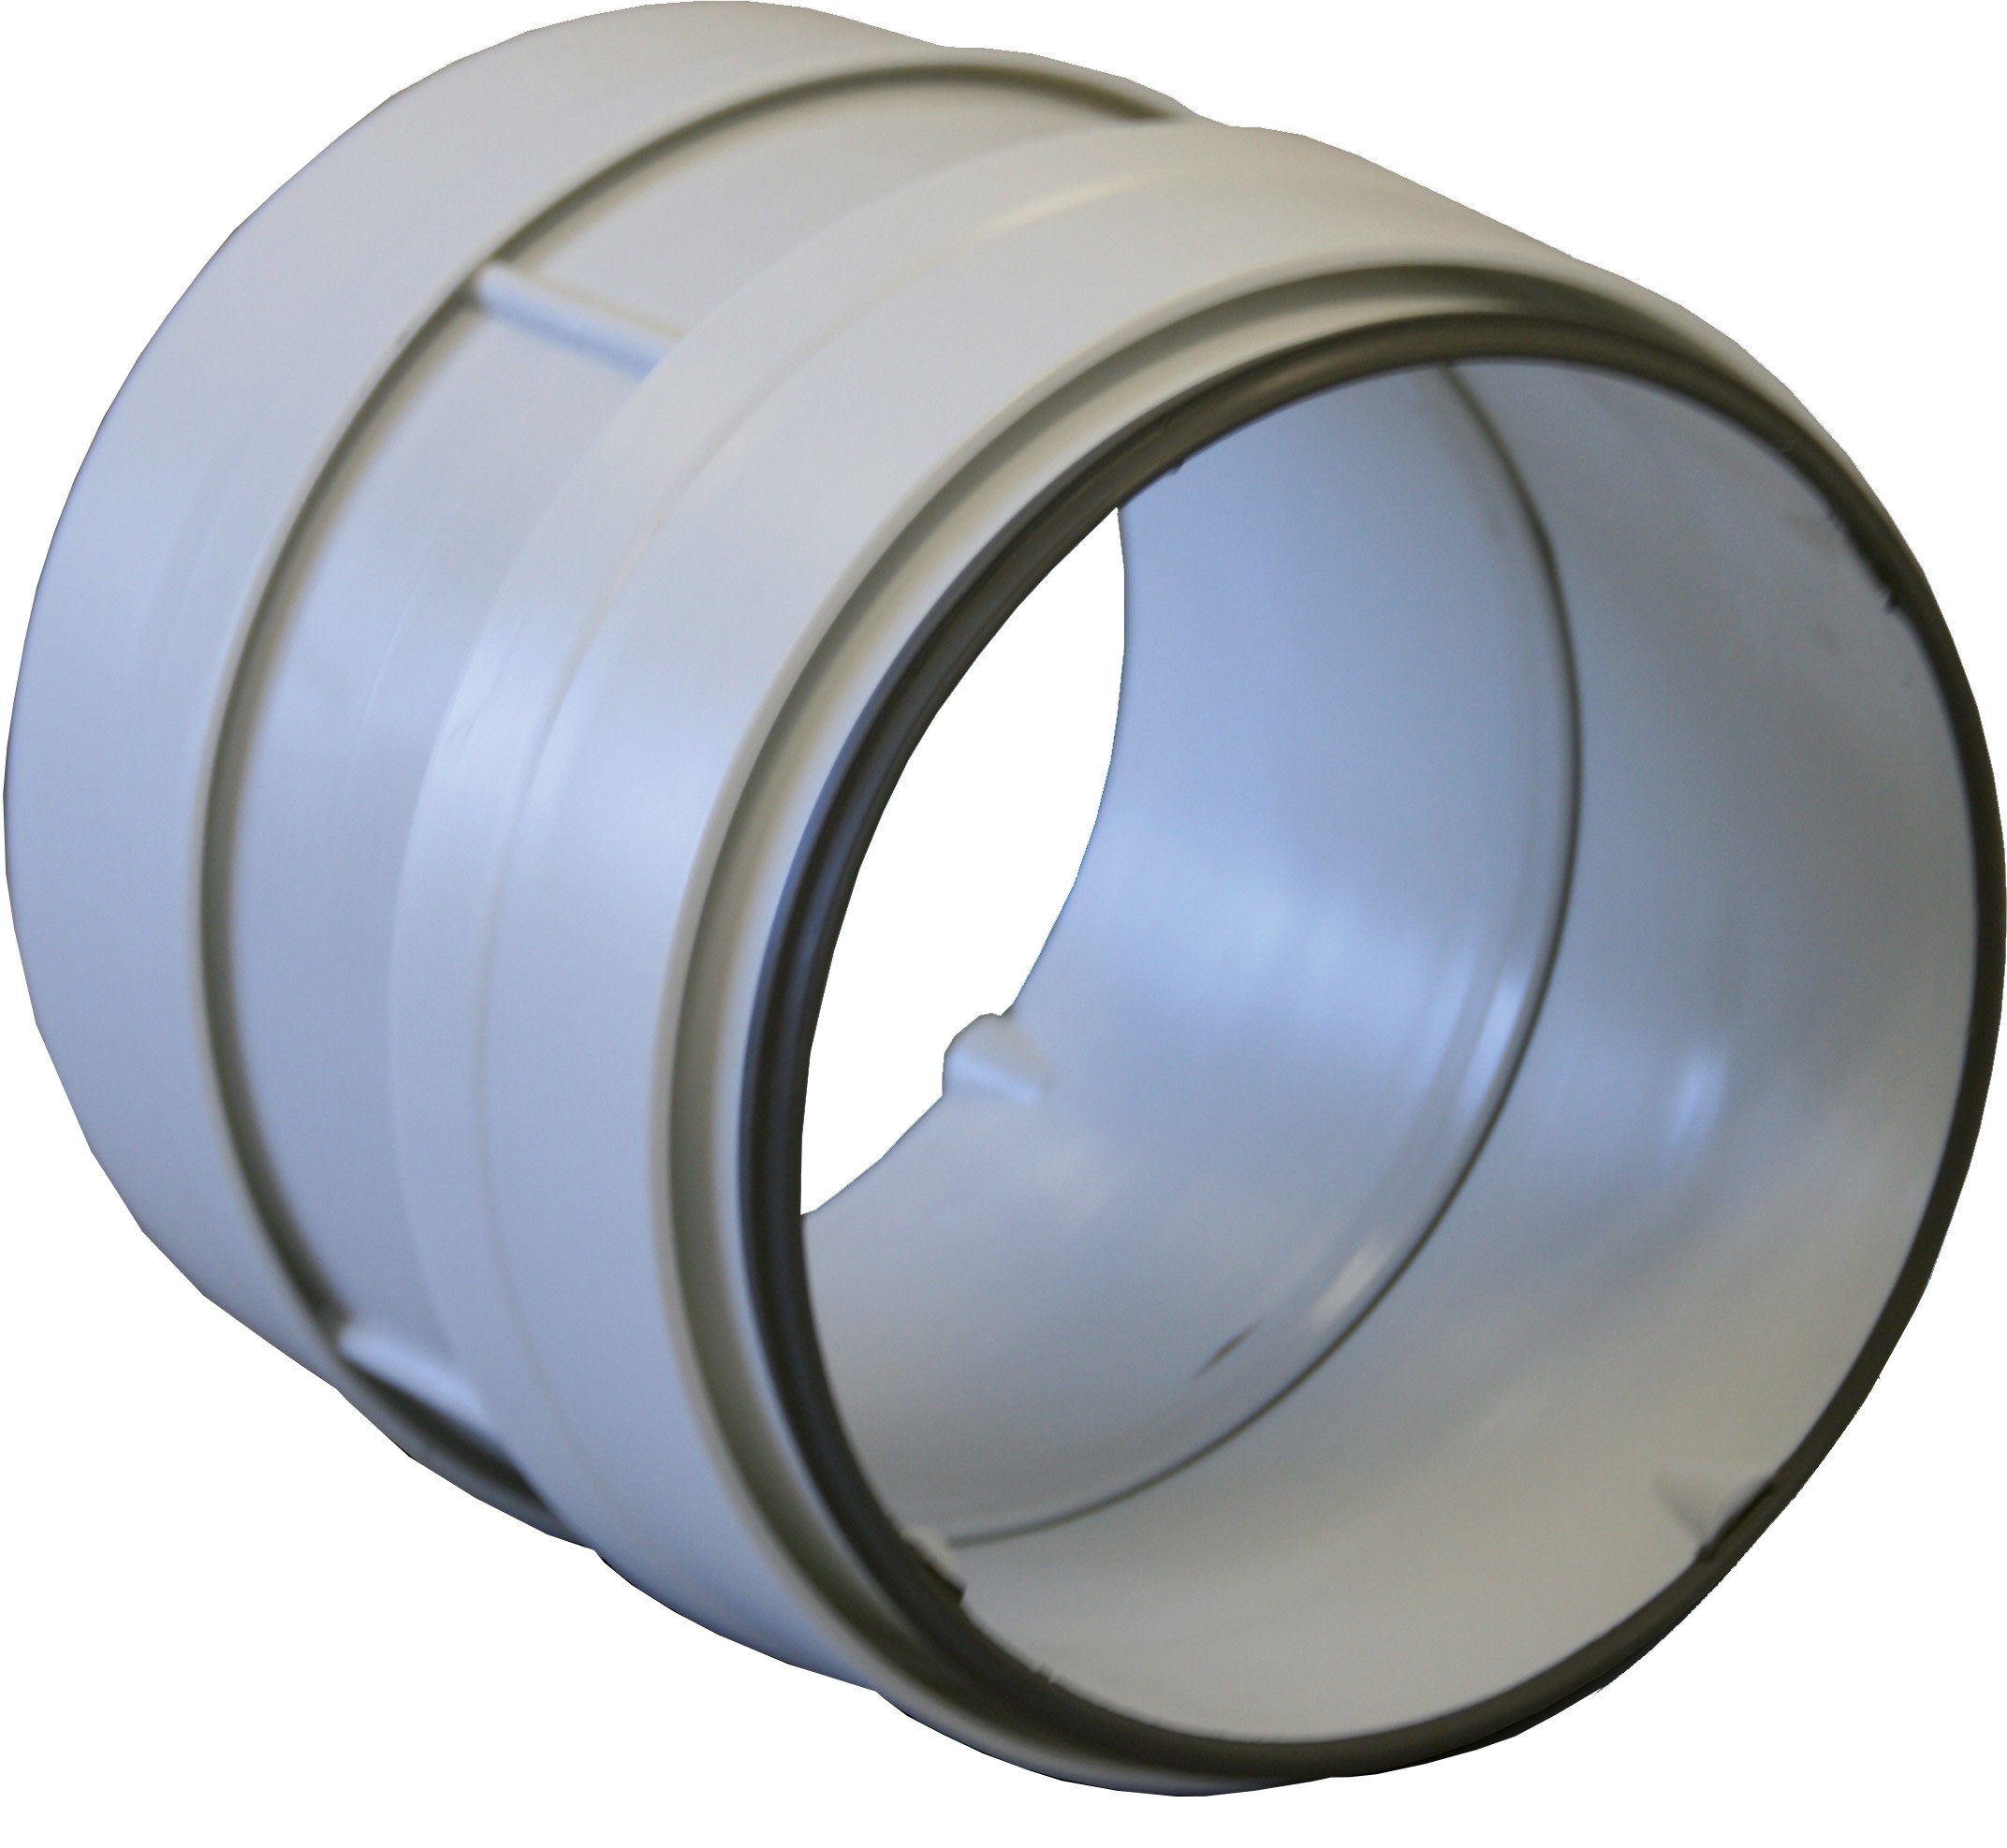 S&P - Manchon circulaire PVC rigide à joints, D 125 mm, gamme TUBPLA